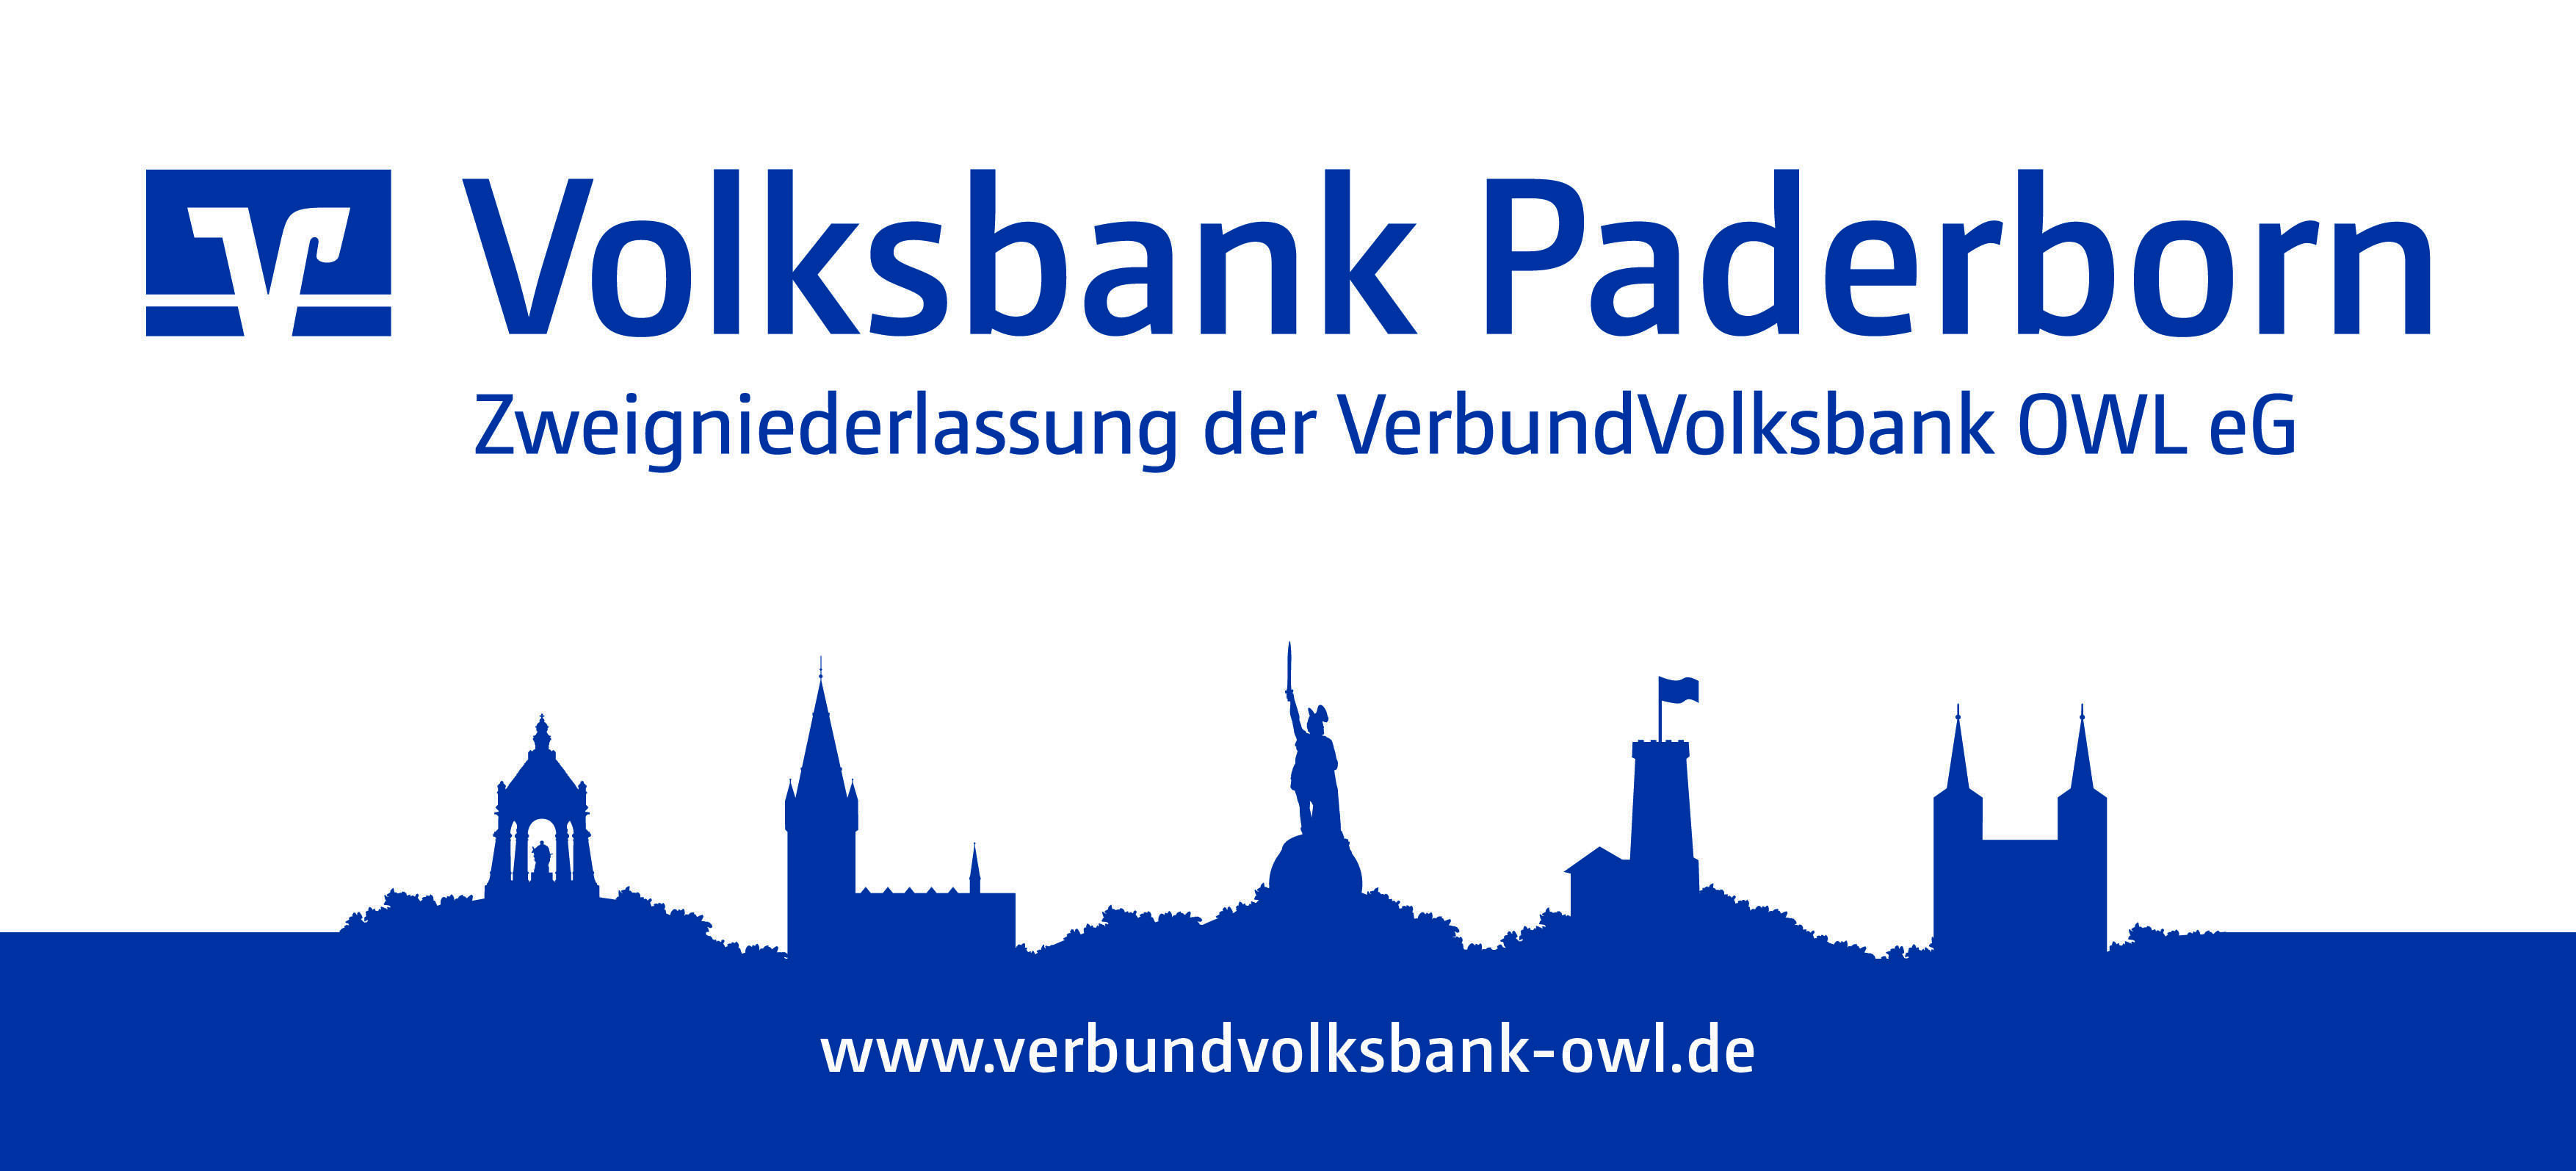 Verbundvolksbank OWL